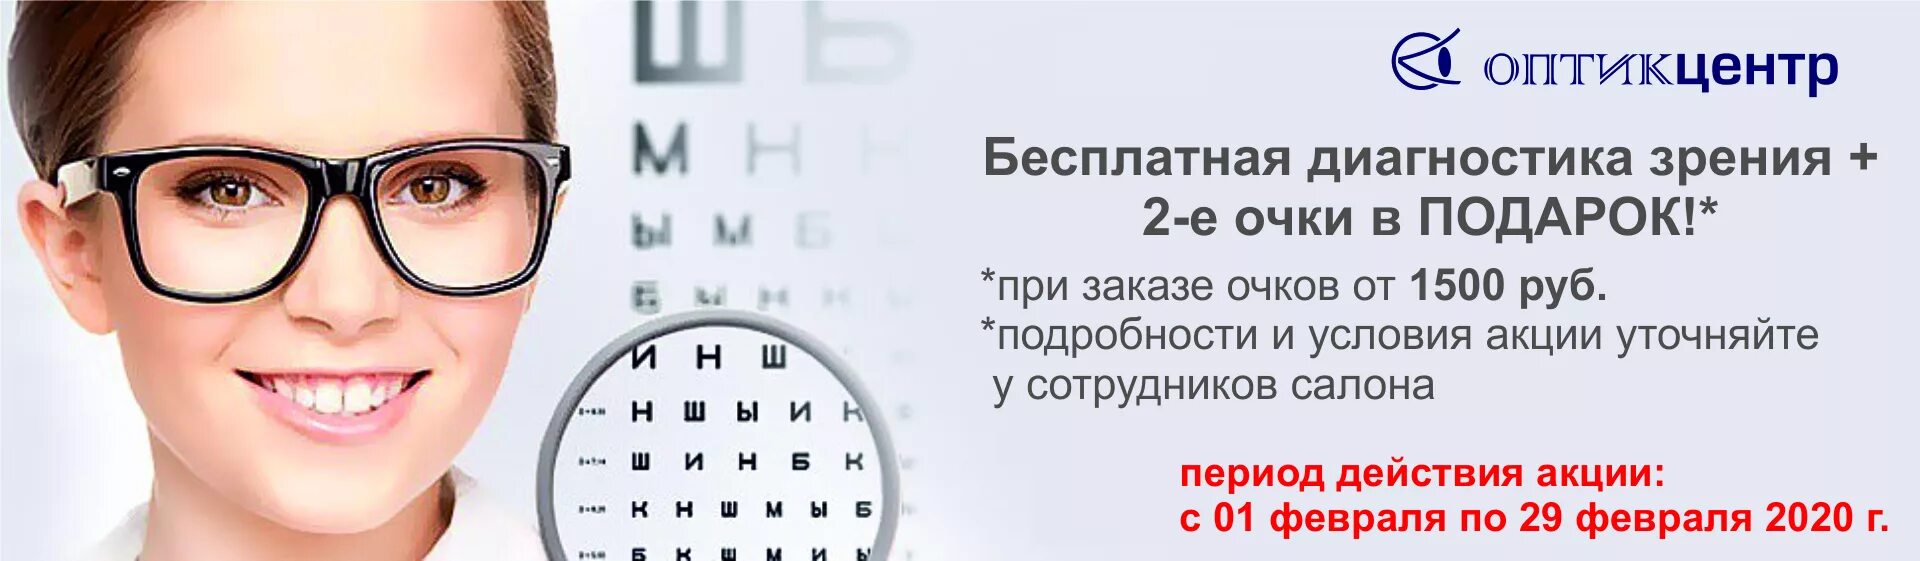 Проверка зрения реклама. Очки для зрения баннер. Реклама очков для зрения. Очки офтальмолога. Проверить зрение клиника